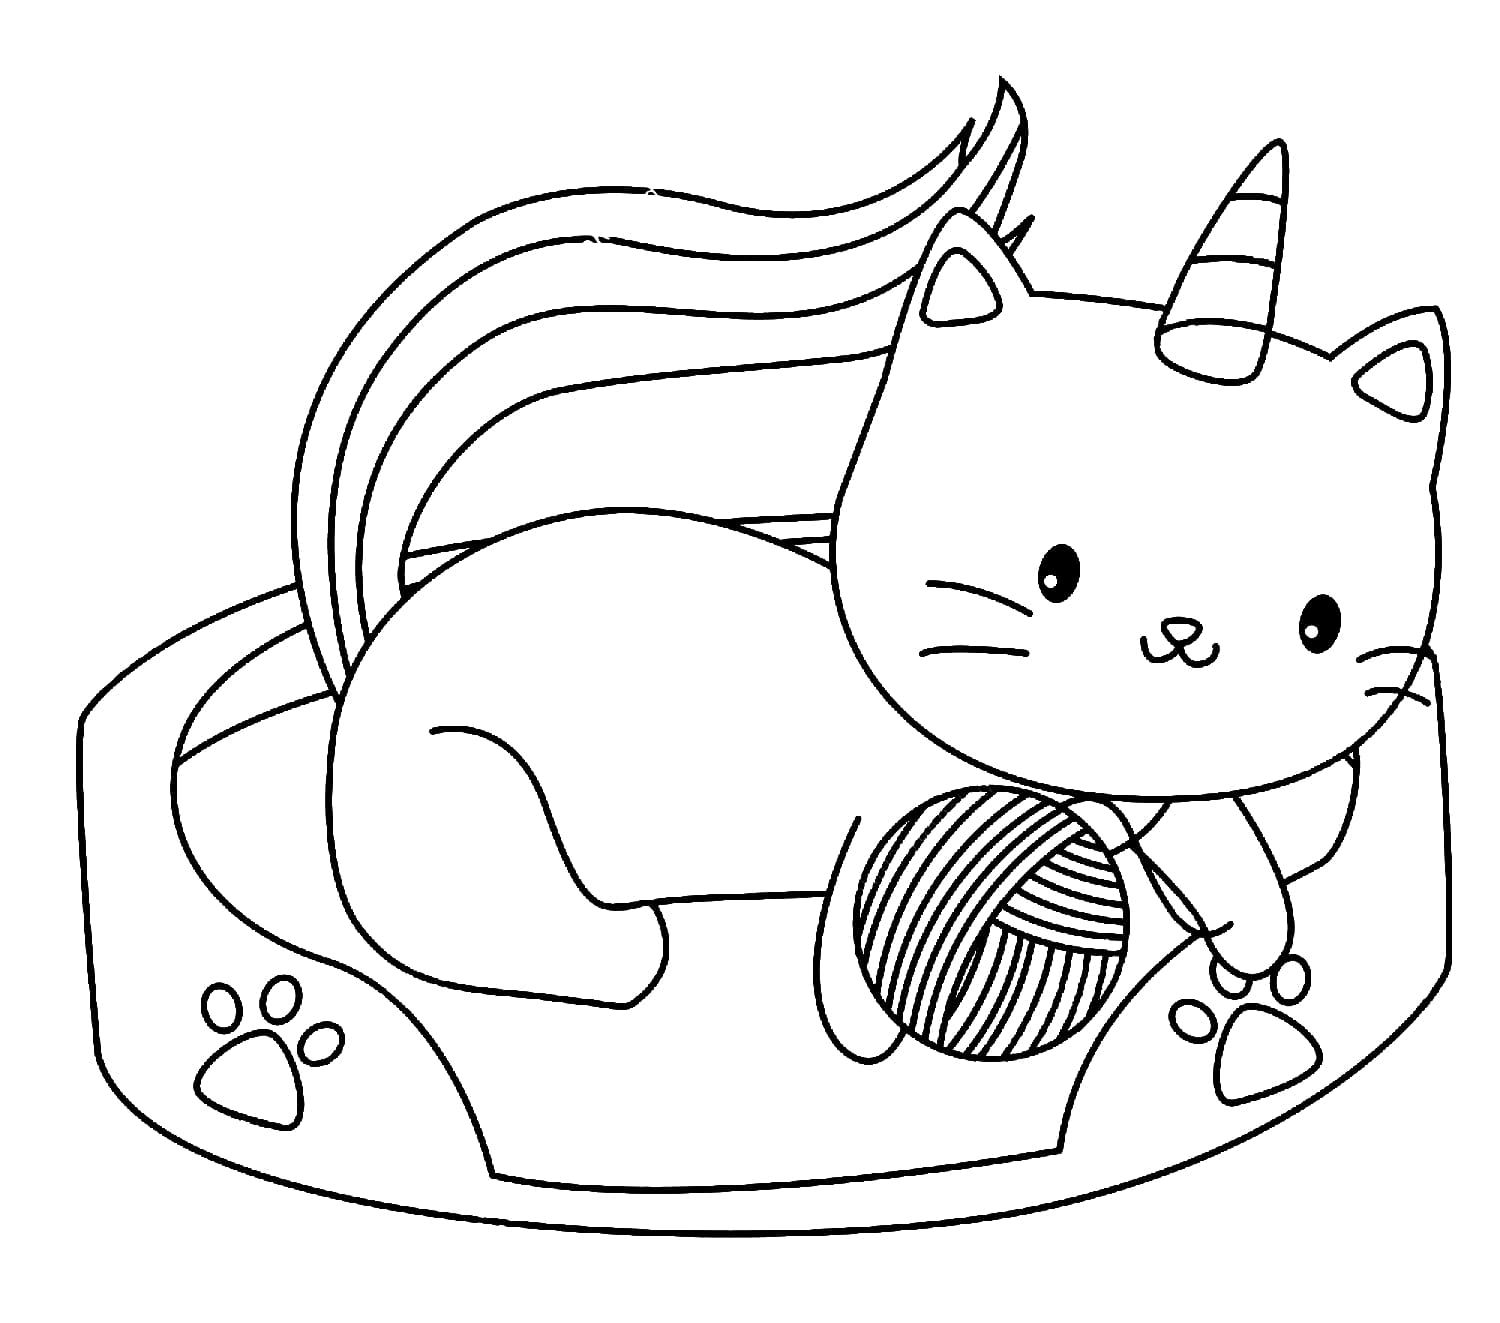 65 Desenhos para colorir kawaii e imprimir  Unicorn coloring pages,  Pusheen coloring pages, Cat coloring page